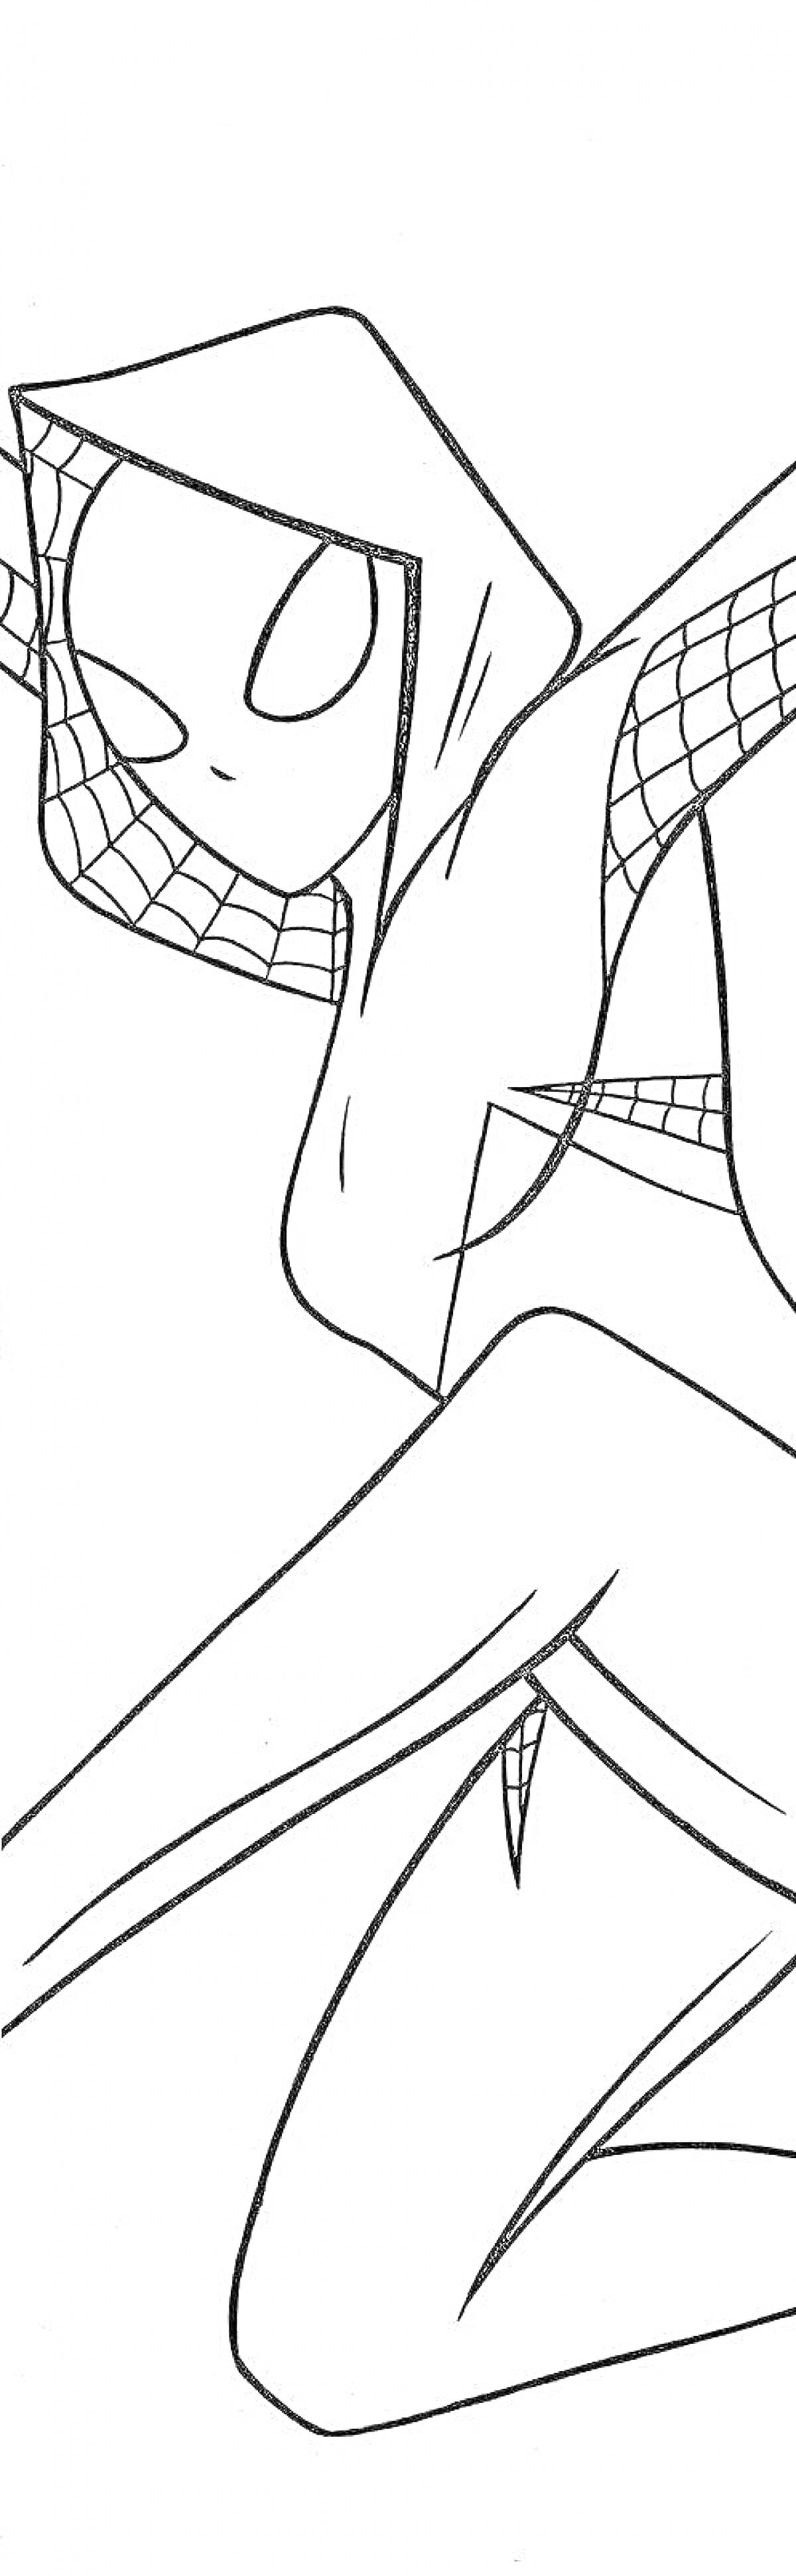 Раскраска Гвен Паук в маске с паутиной, в прыжке